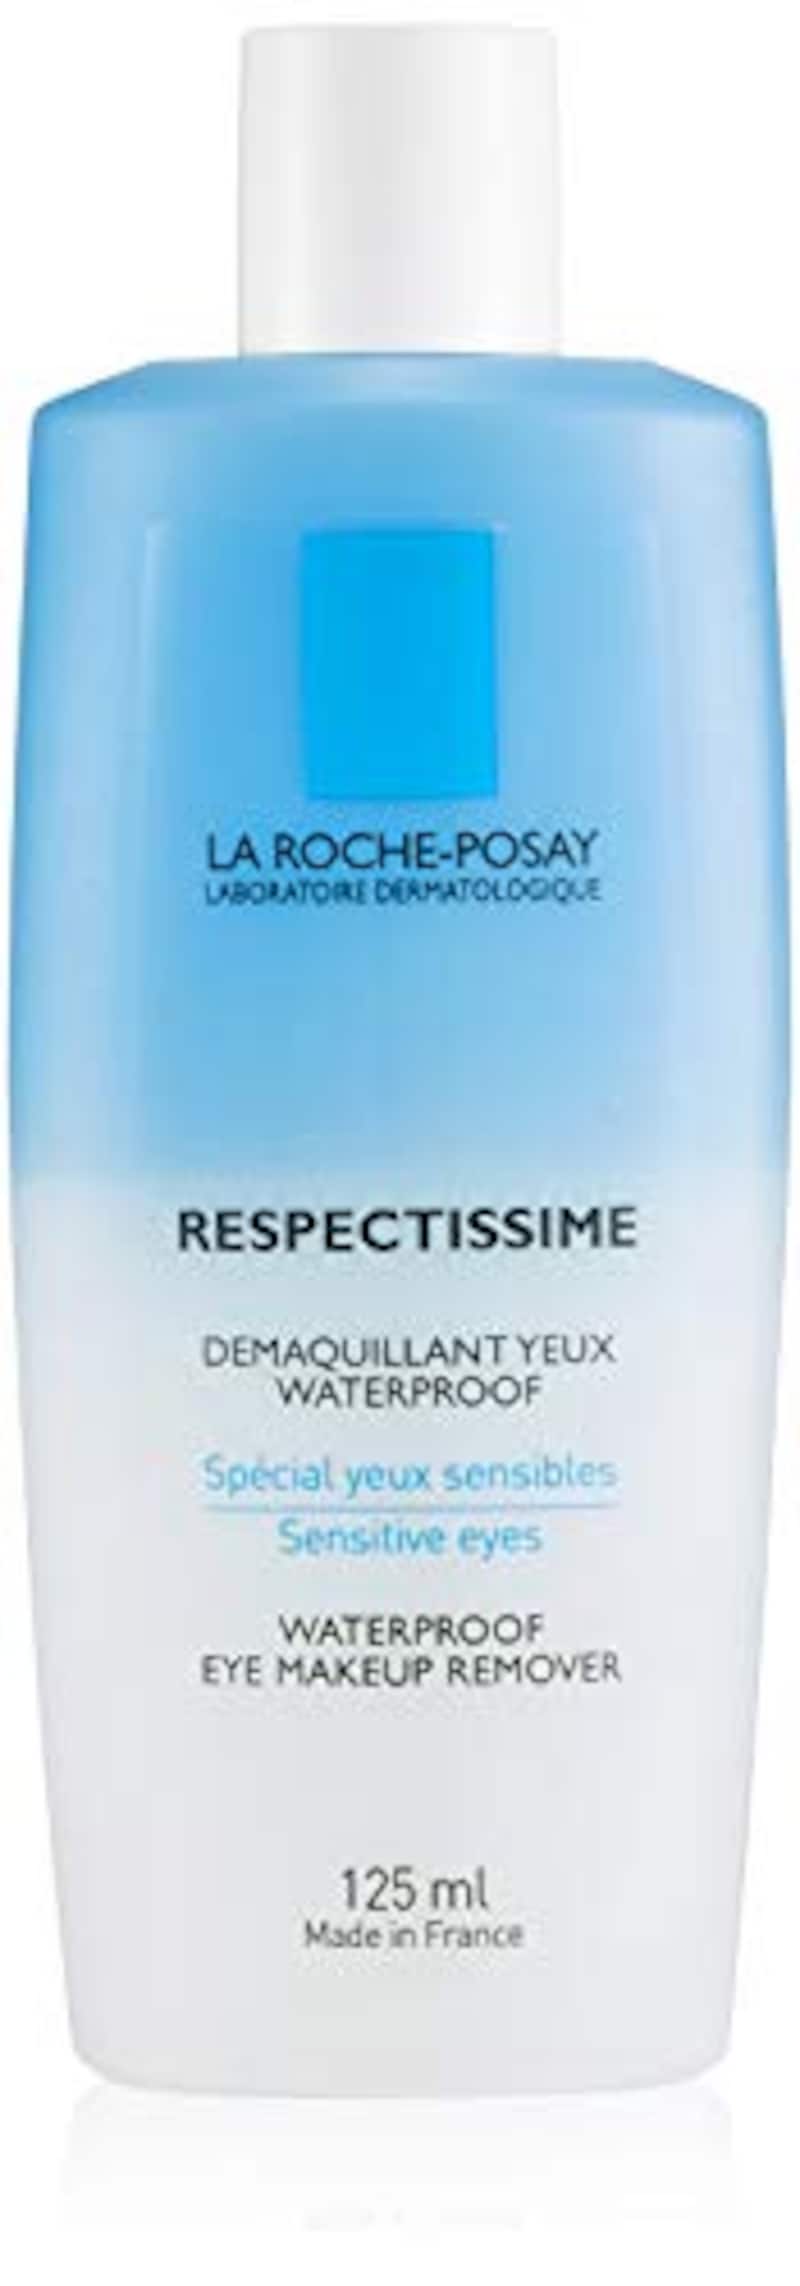 La Roche-Posay（ラロッシュポゼ）,レスペクティッシム ポイントメイクアップリムーバー